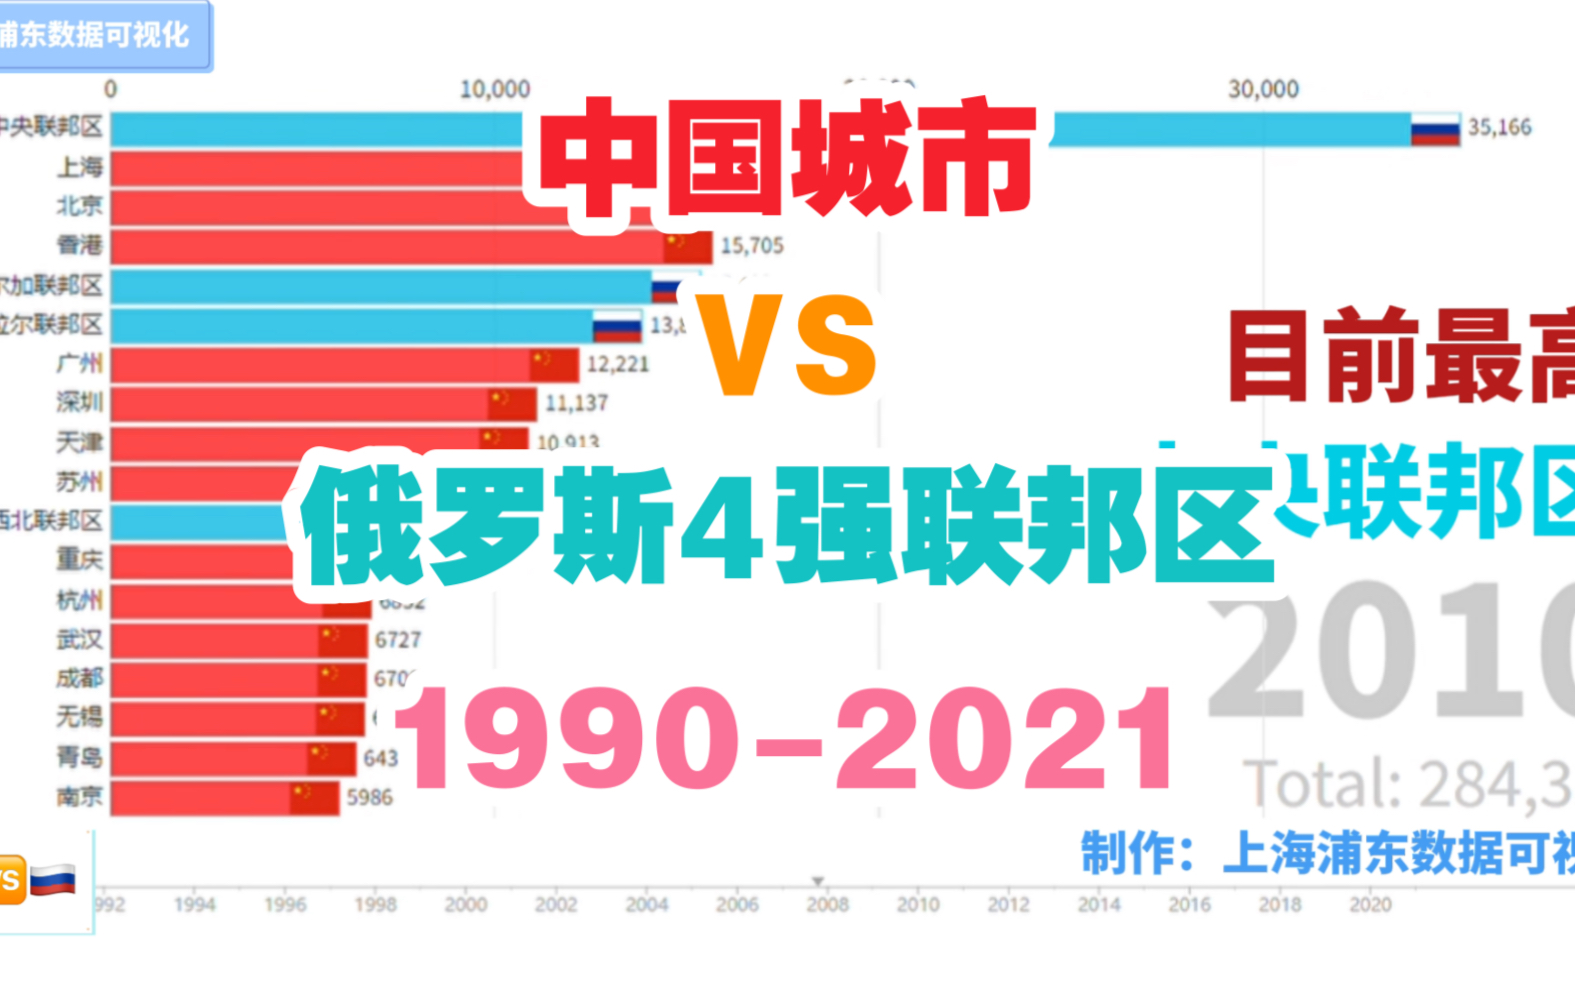 【数据可视化】中国城市VS俄罗斯4强联邦区GDP『1990-2021』